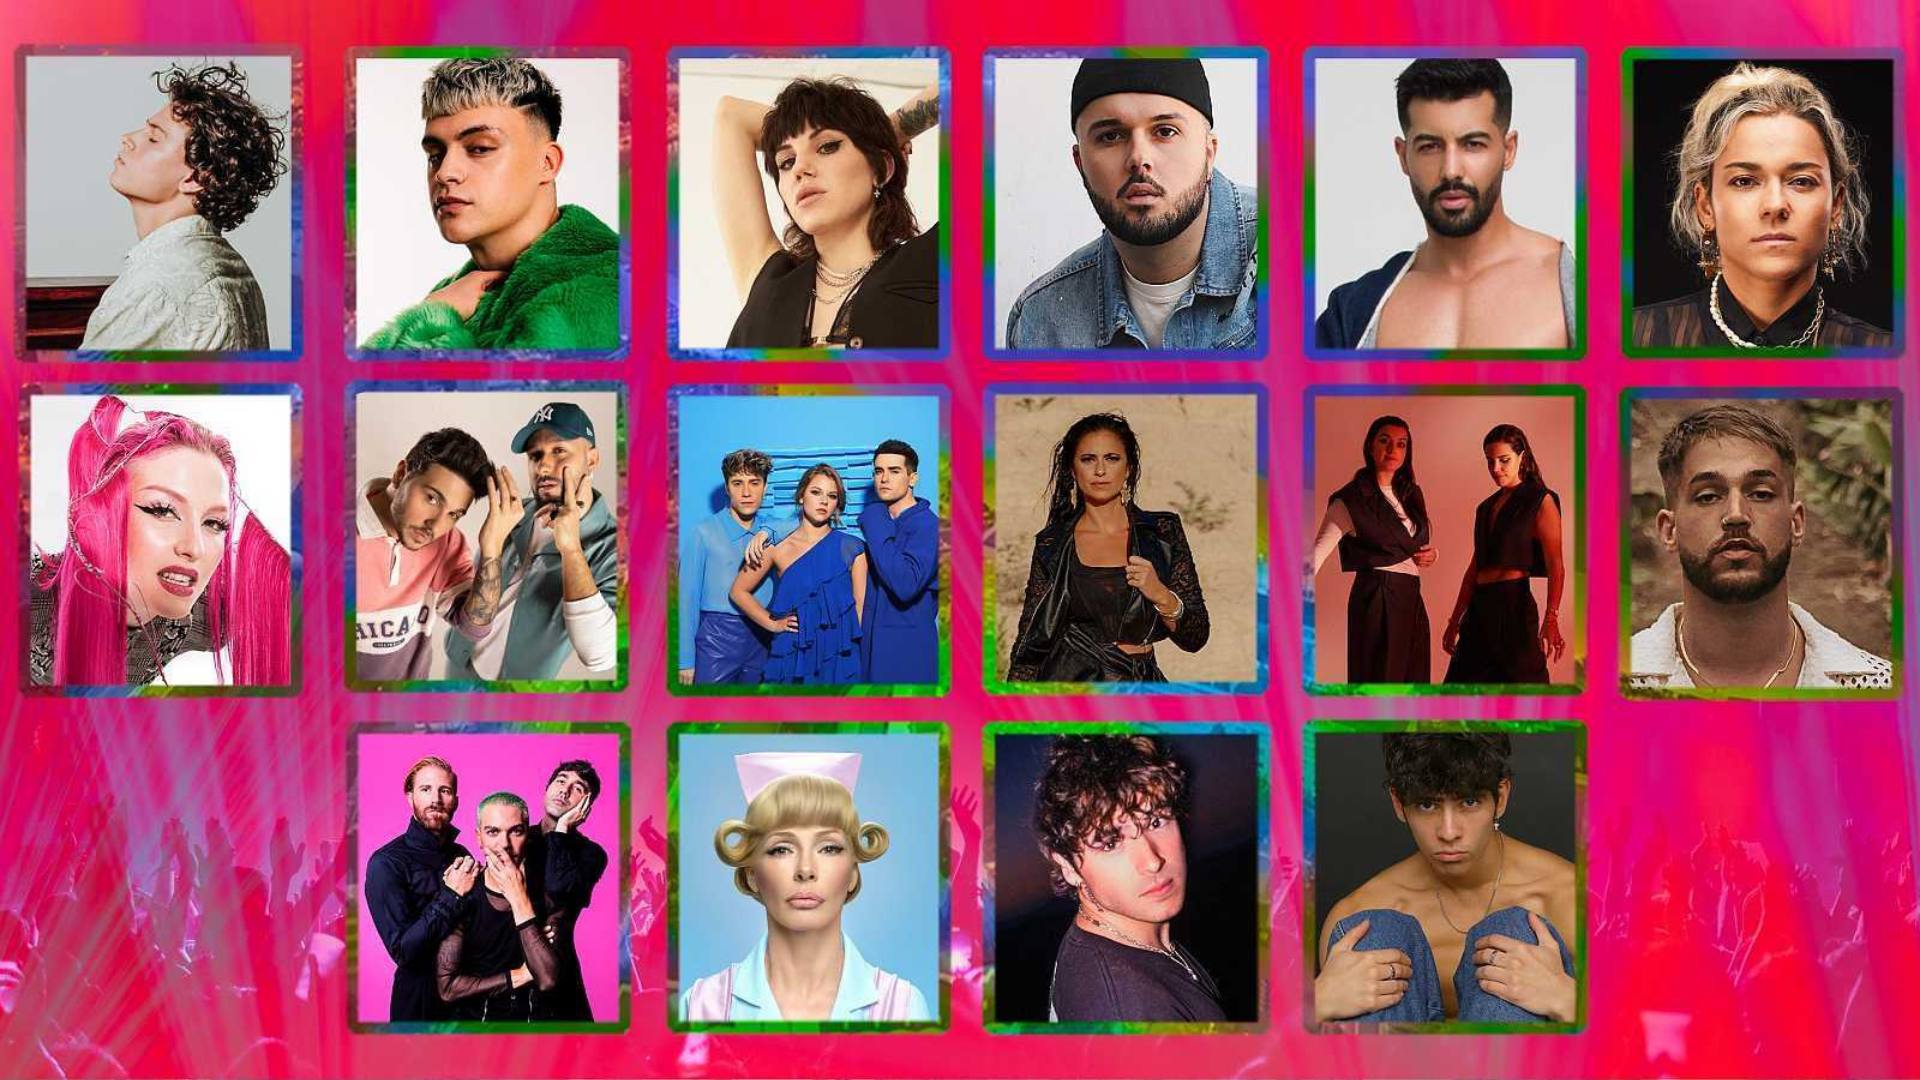 Los 16 temas candidatos a representar a España en Eurovisión